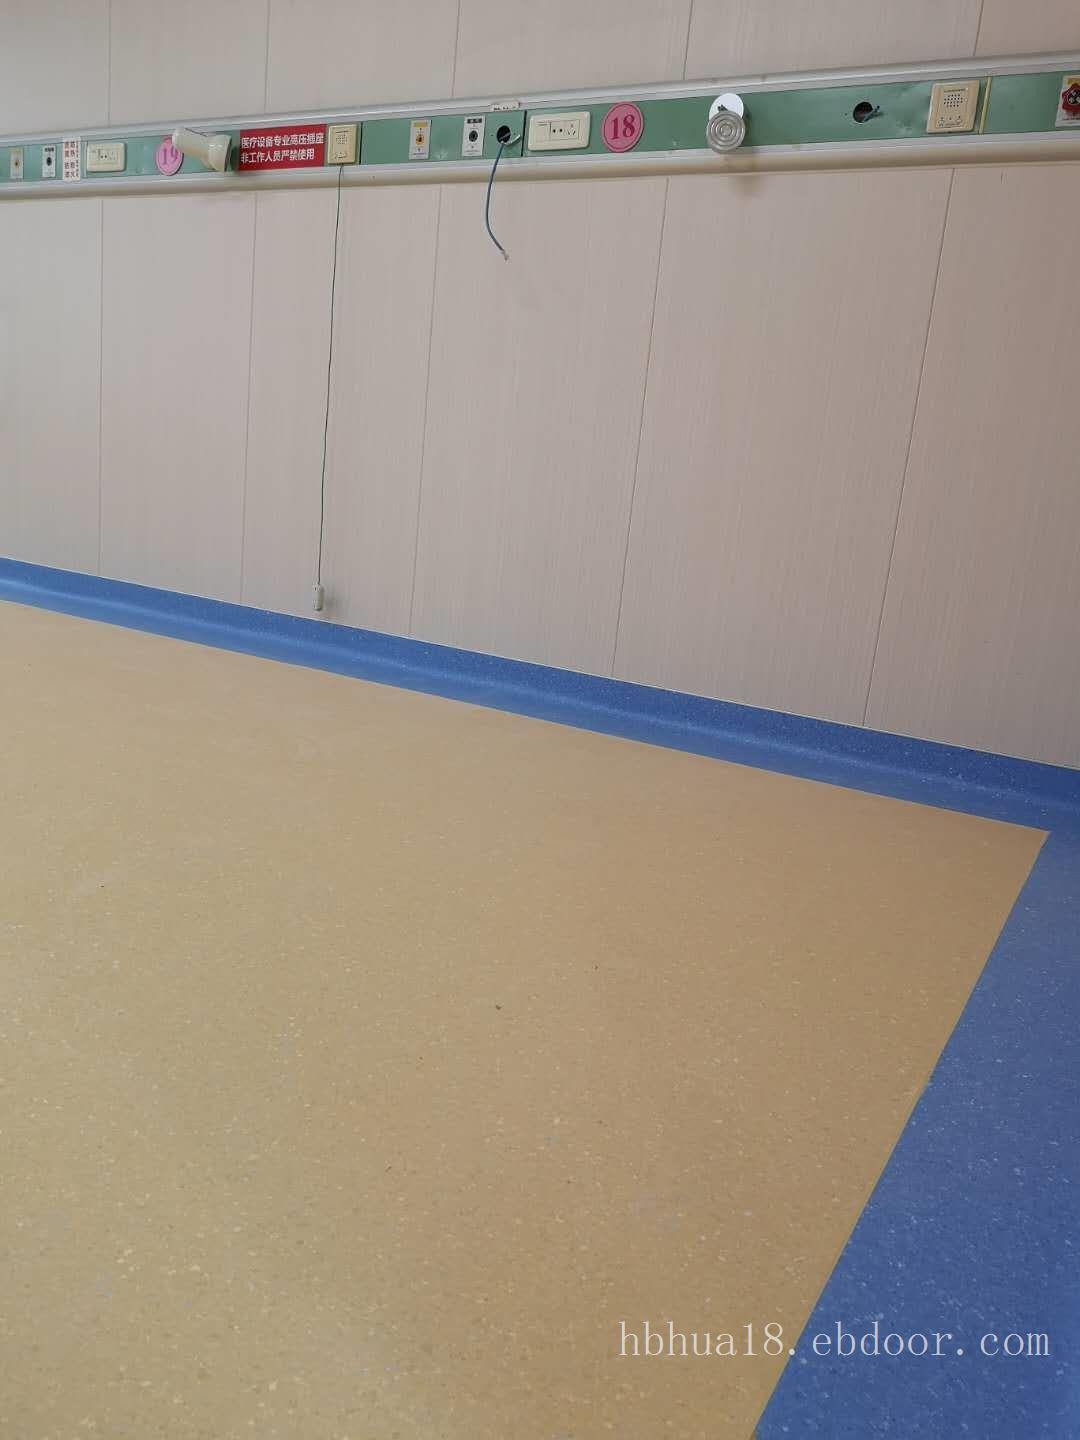 无味室内专用耐磨胶地板|鹤山厂家直销环保PVC胶地板